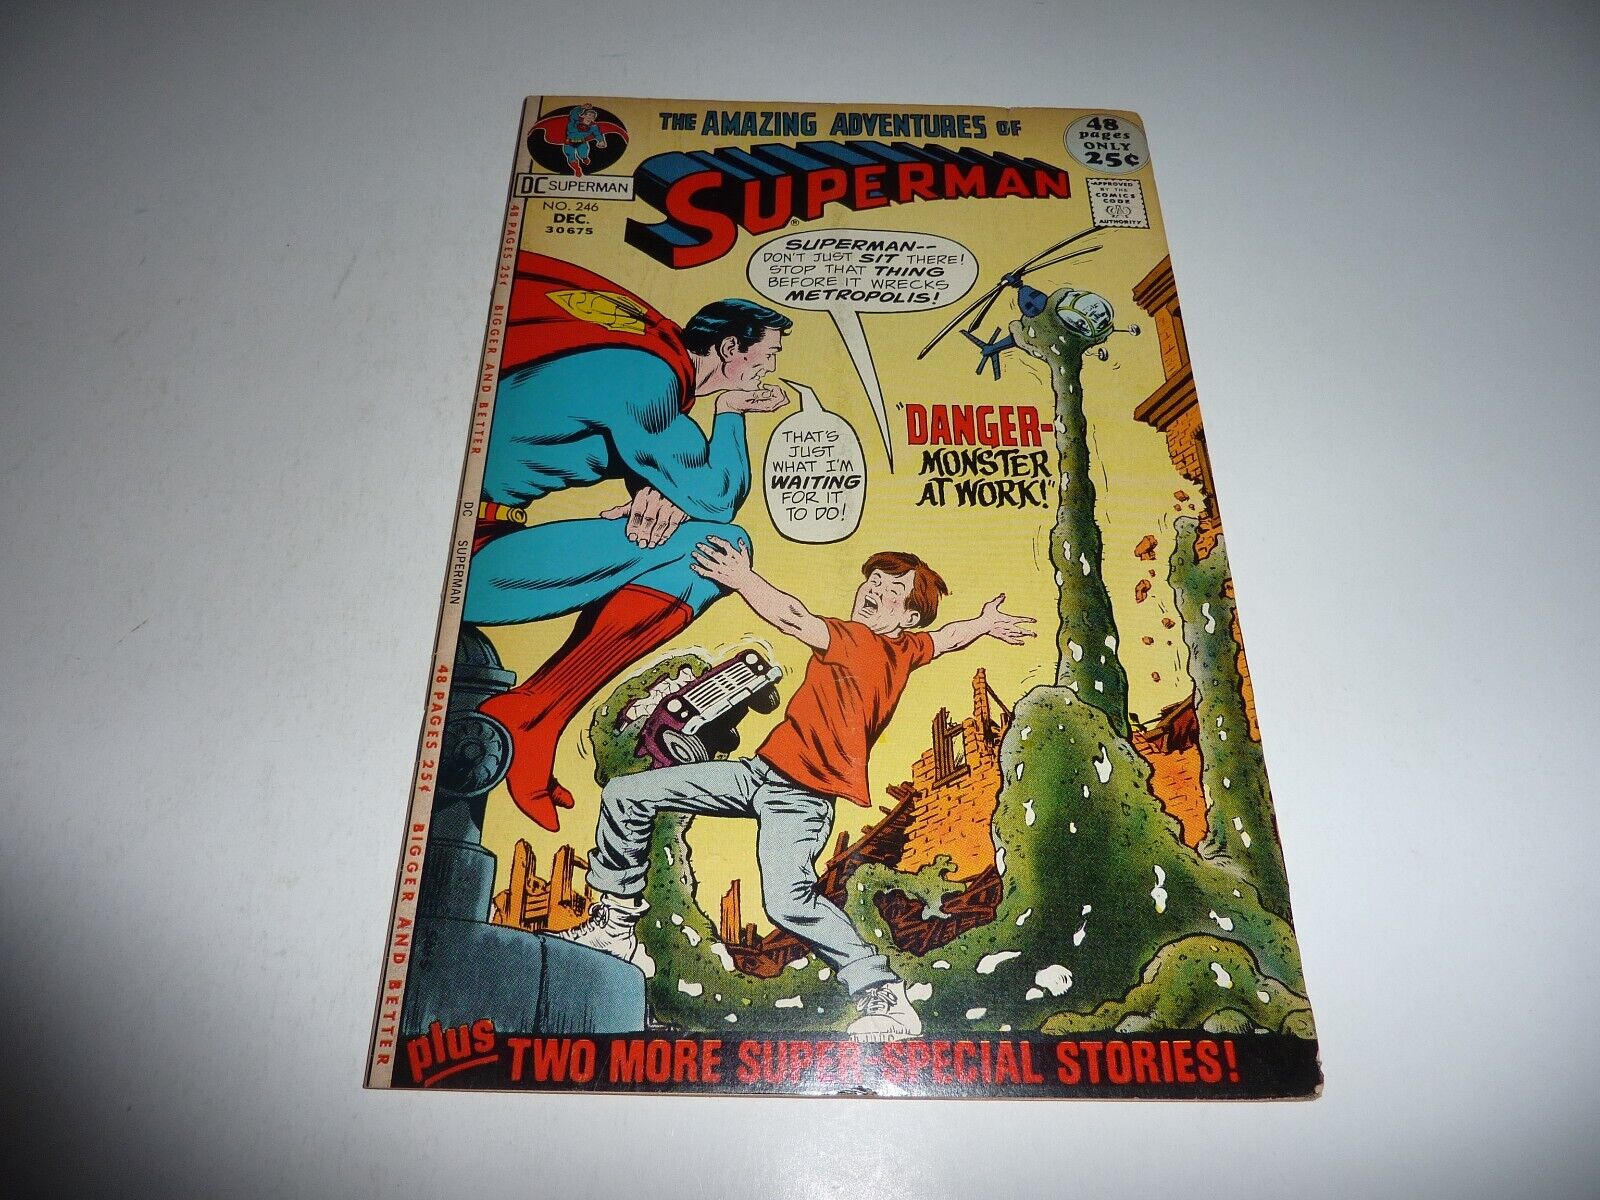 SUPERMAN #246 DC Comics Dec 1971 Curt Swan Cover Danger Monster at Work FN- 5.5